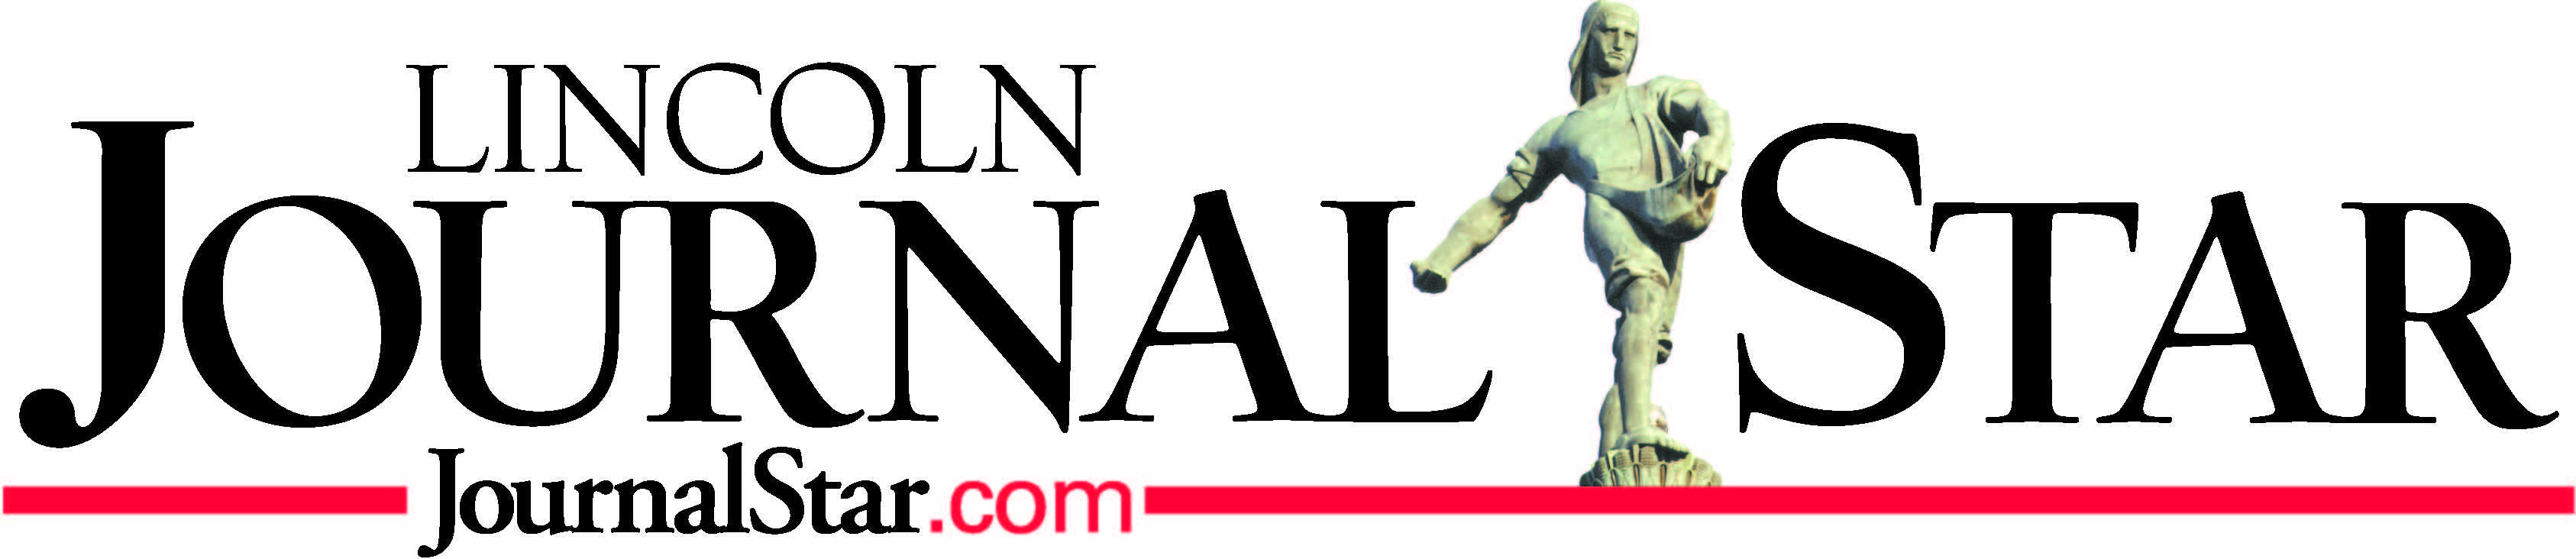 Lincoln Journal Star logo